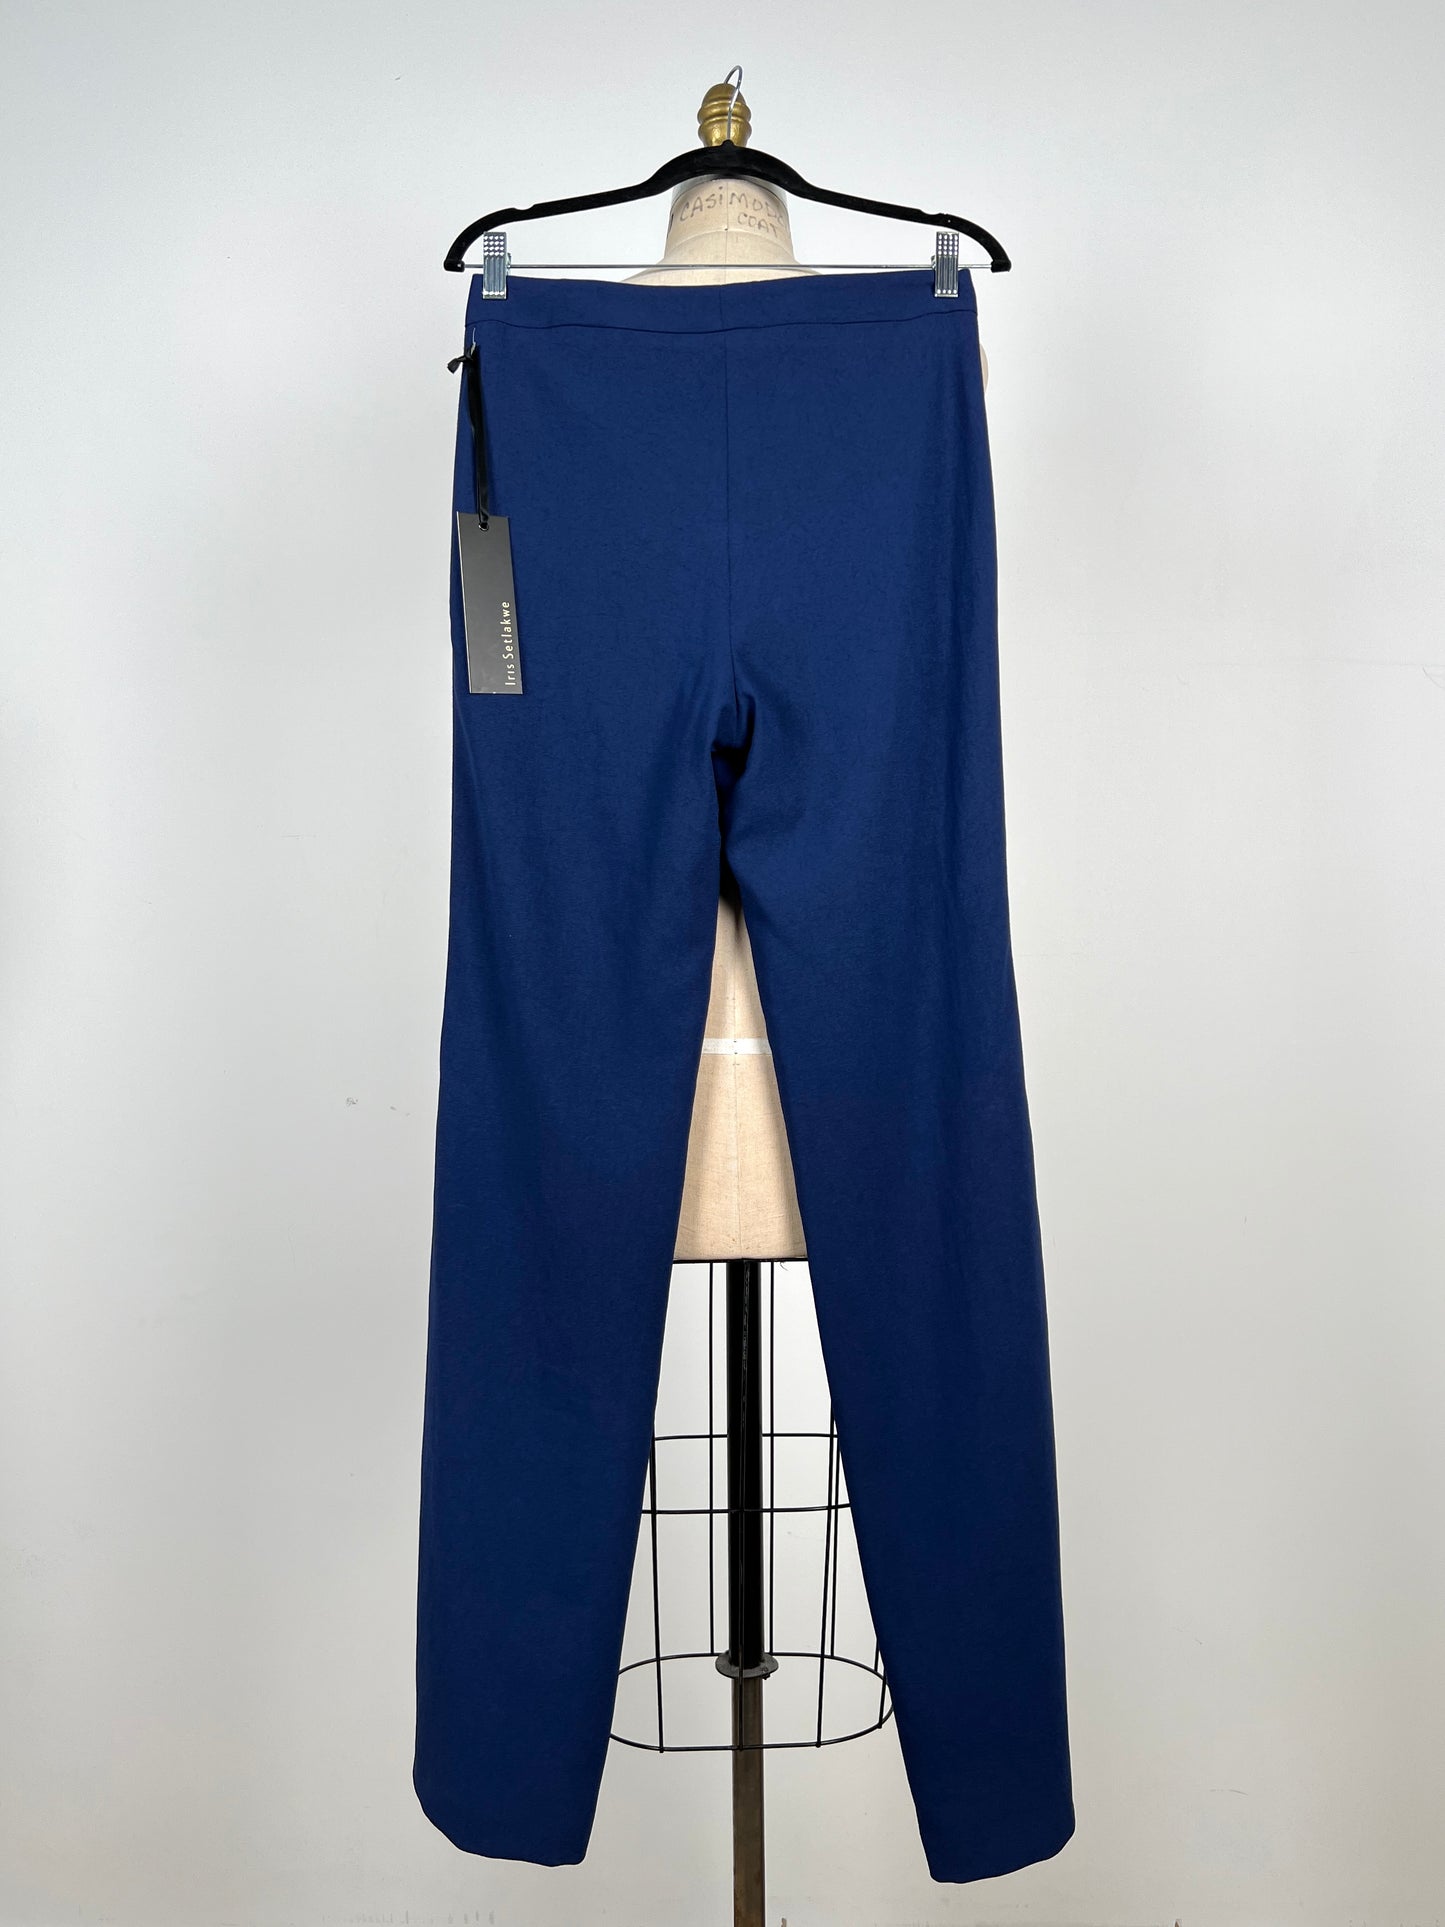 Pantalon tailleur bleu impérial ultra flatteur (S)